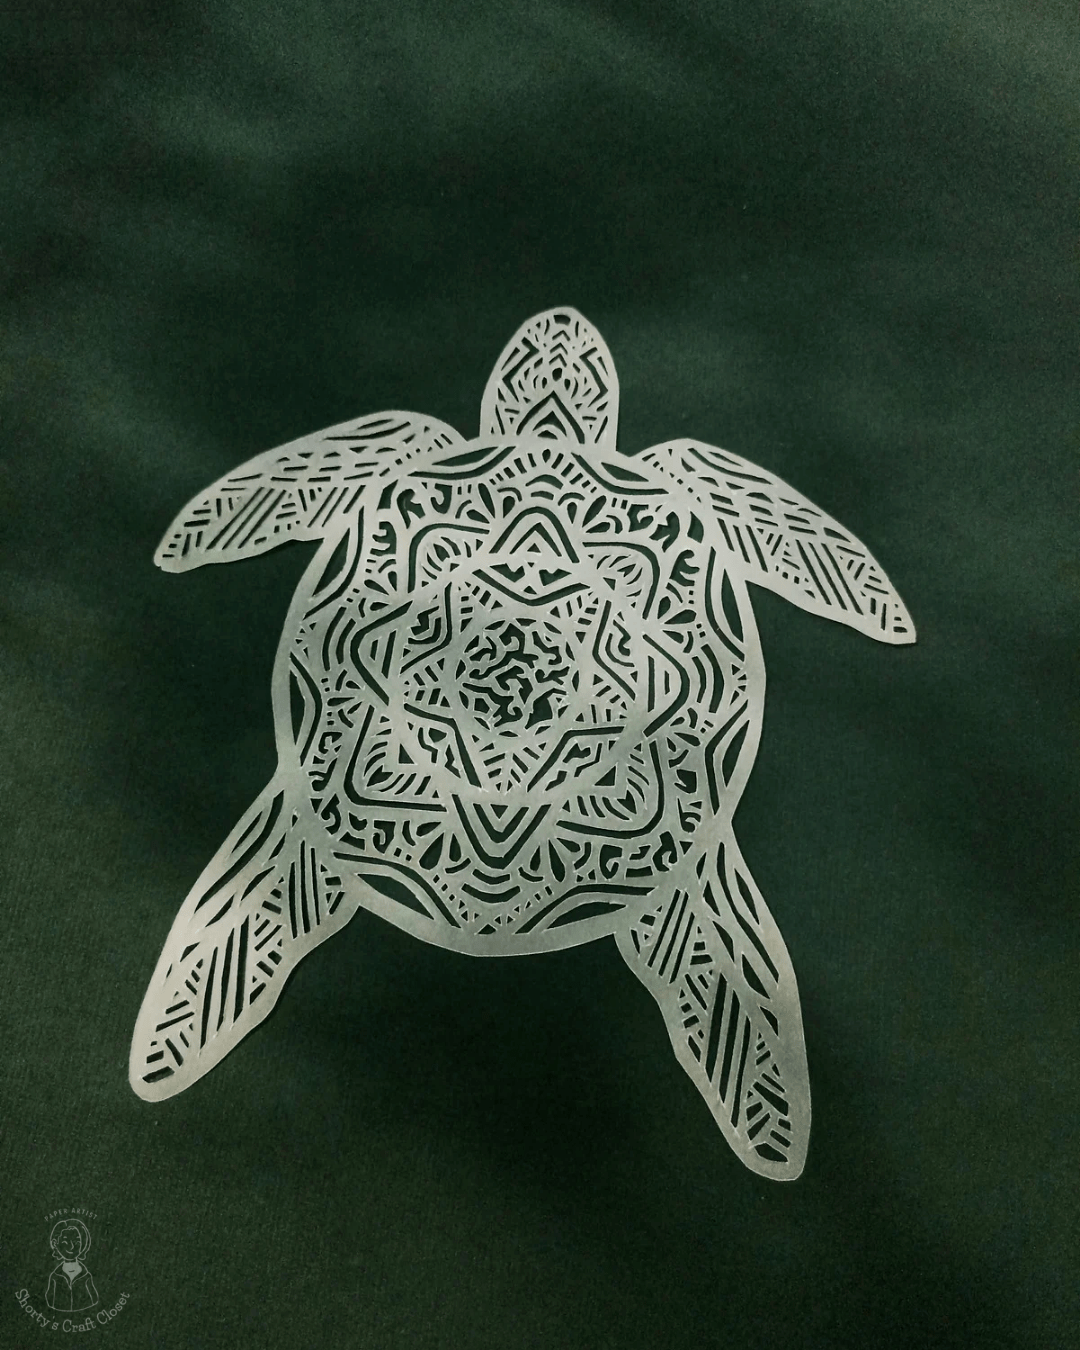 Turtle tortoise vellum paper Paper cutting paper cut paper cut art paper art cutting paper craft